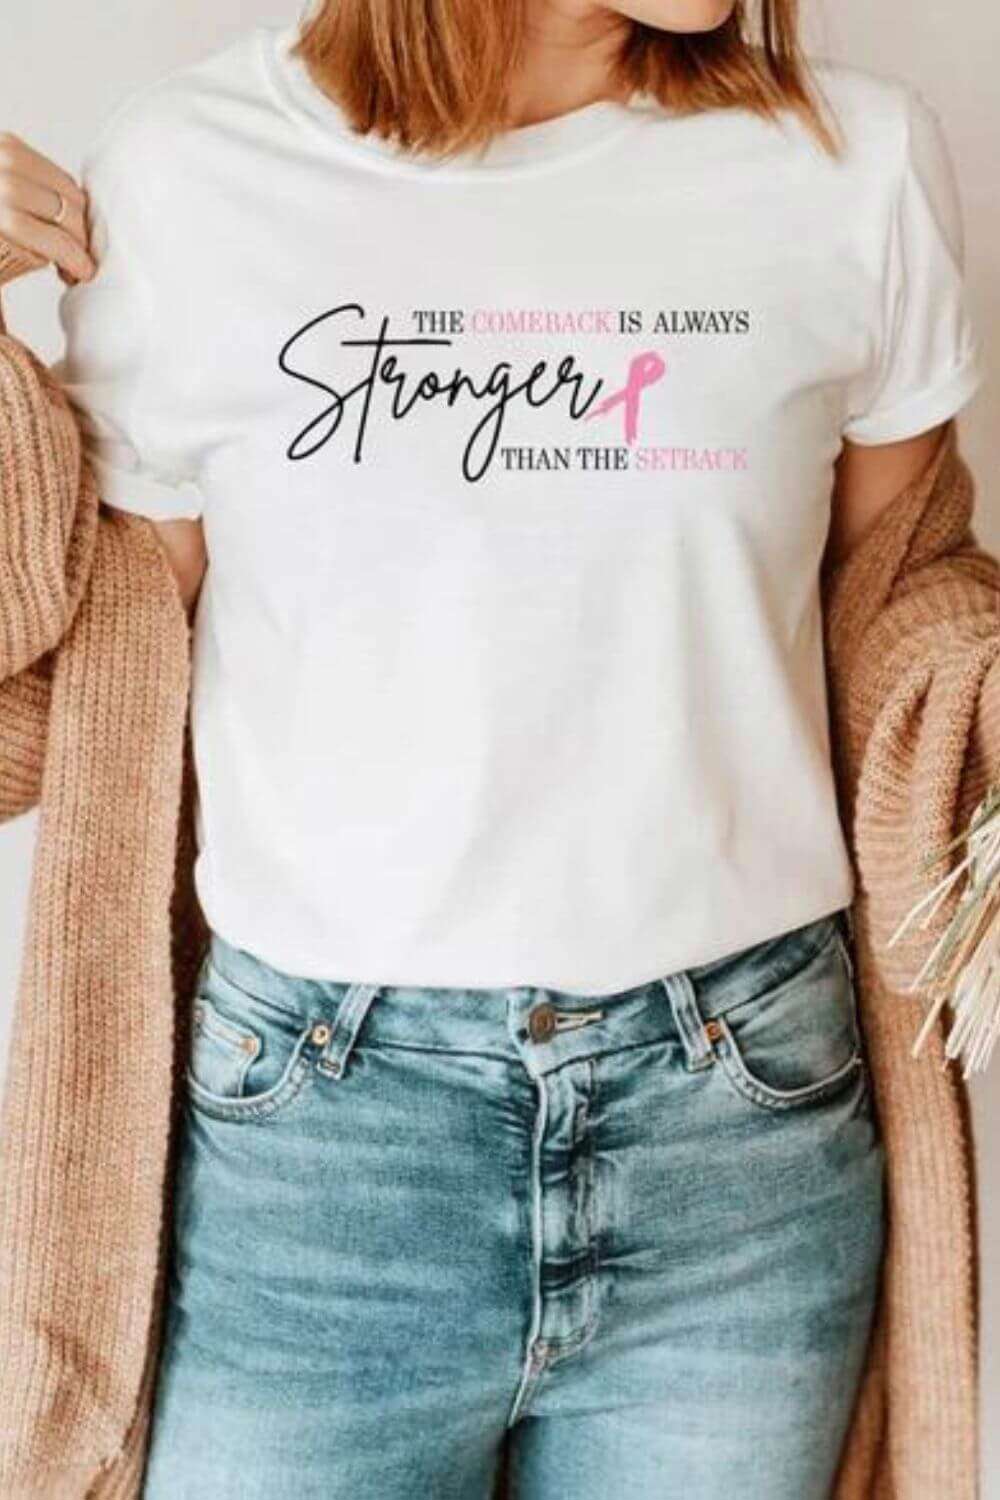 regalos para el dia del cancer camiseta